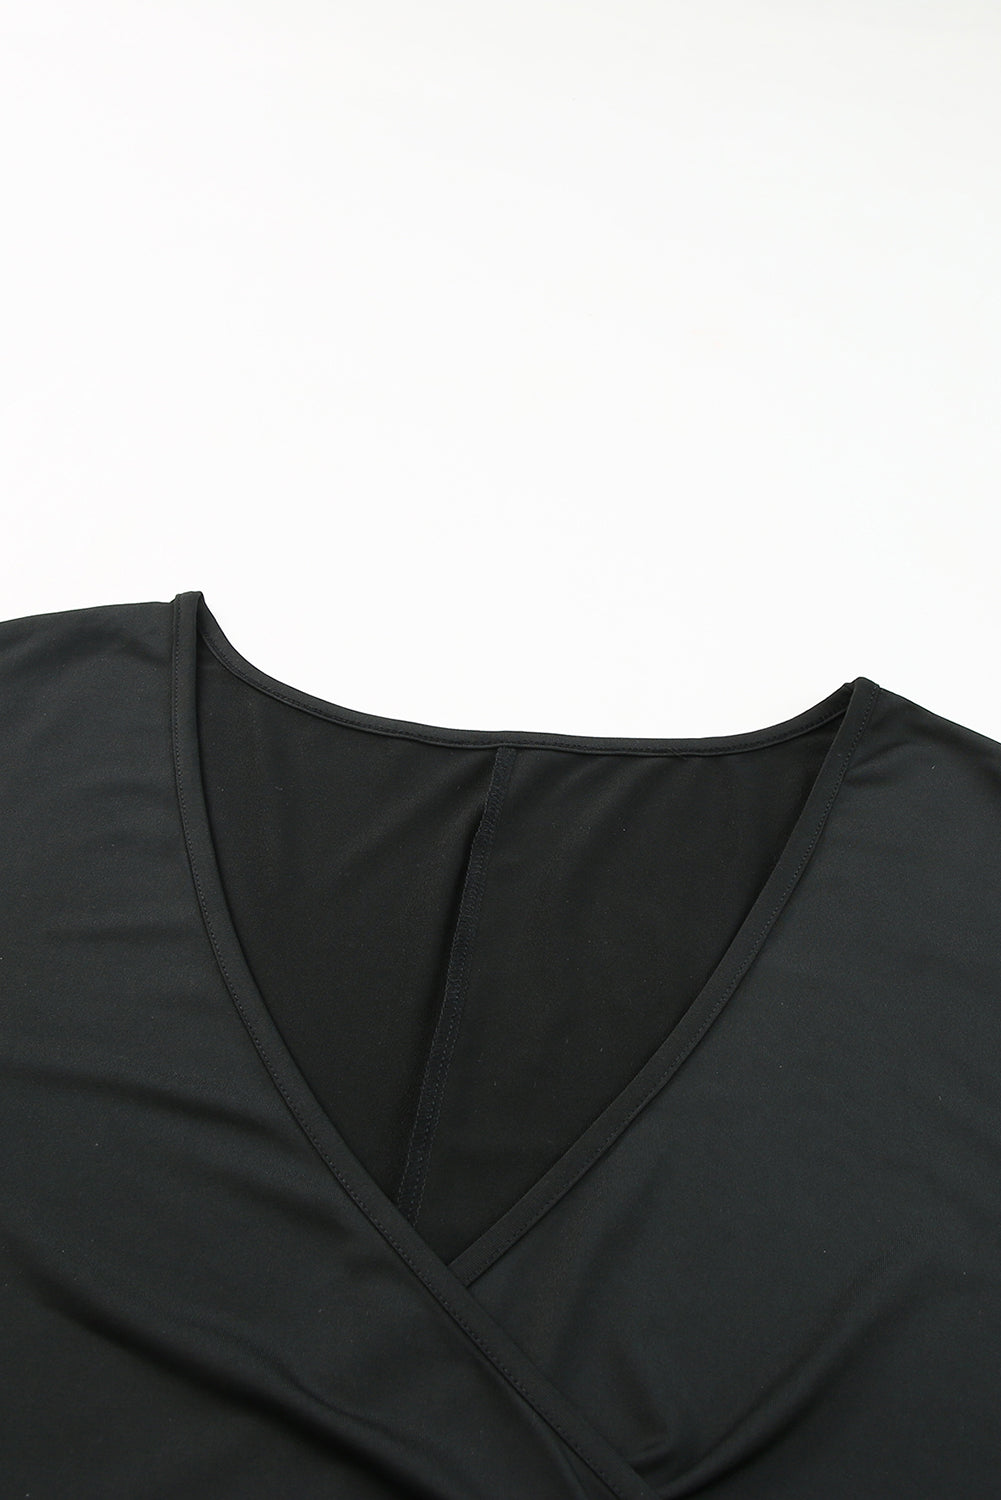 Crna mini haljina s naborima i kratkim rukavima u crnoj veličini